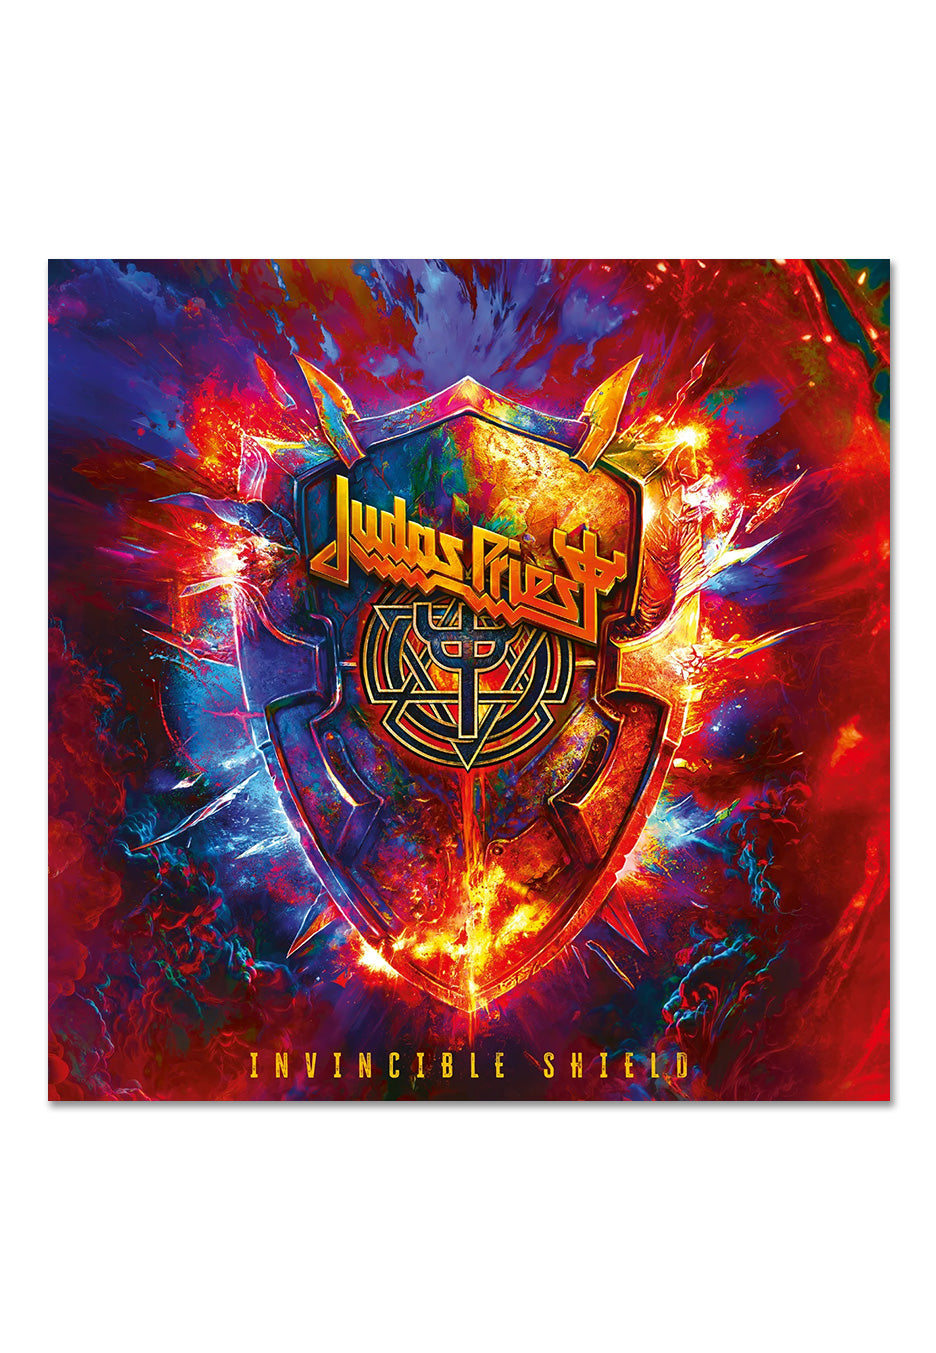 Judas Priest - Invincible Shield (Deluxe Edition) - Mediabook CD